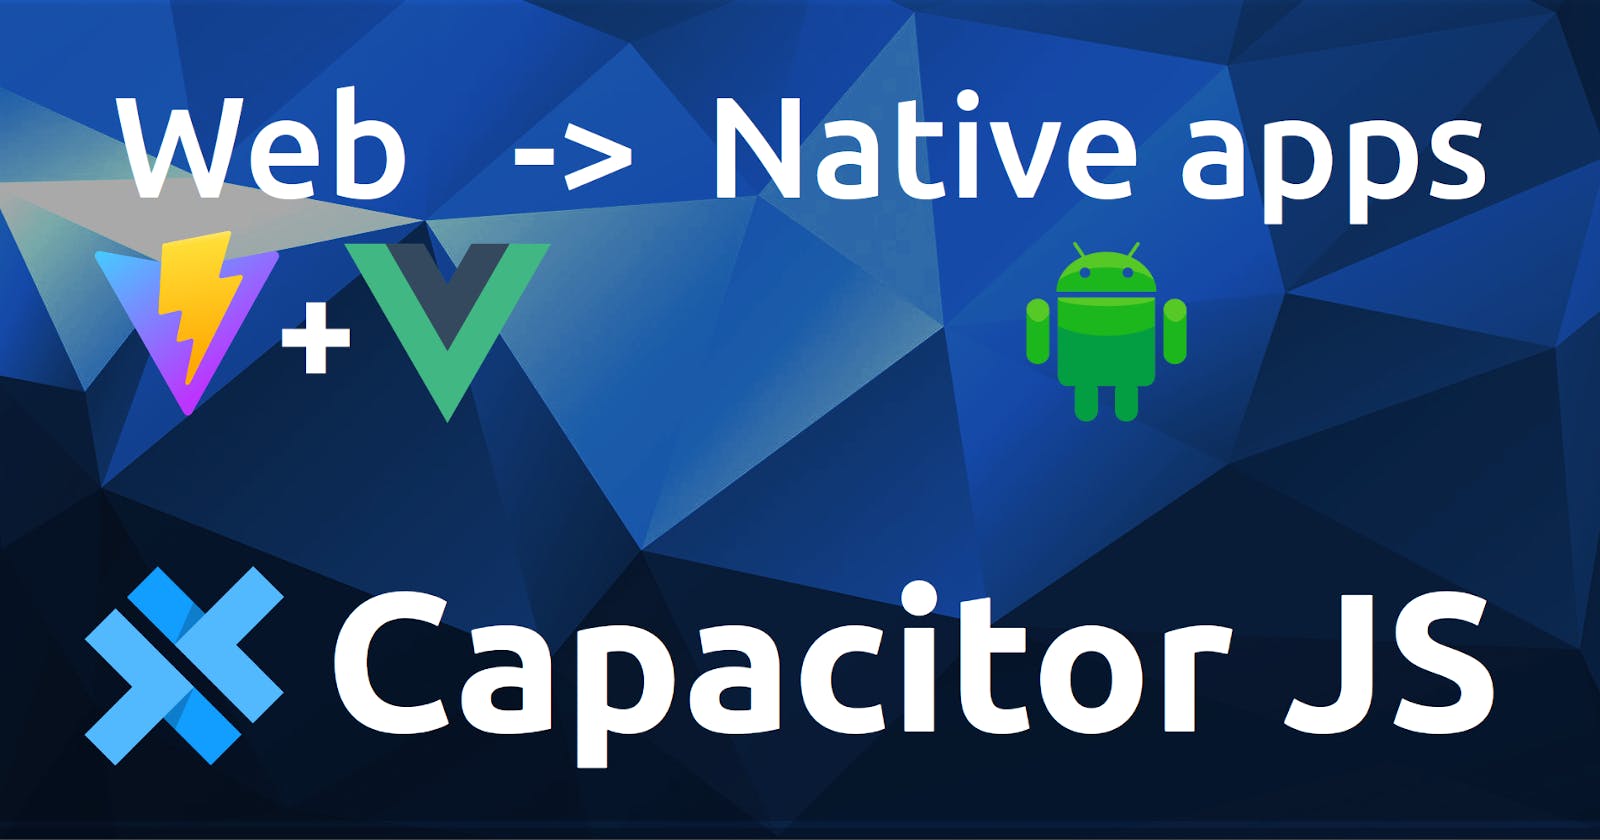 Passos para criar apps nativas usando VueJS/React com Capacitor JS